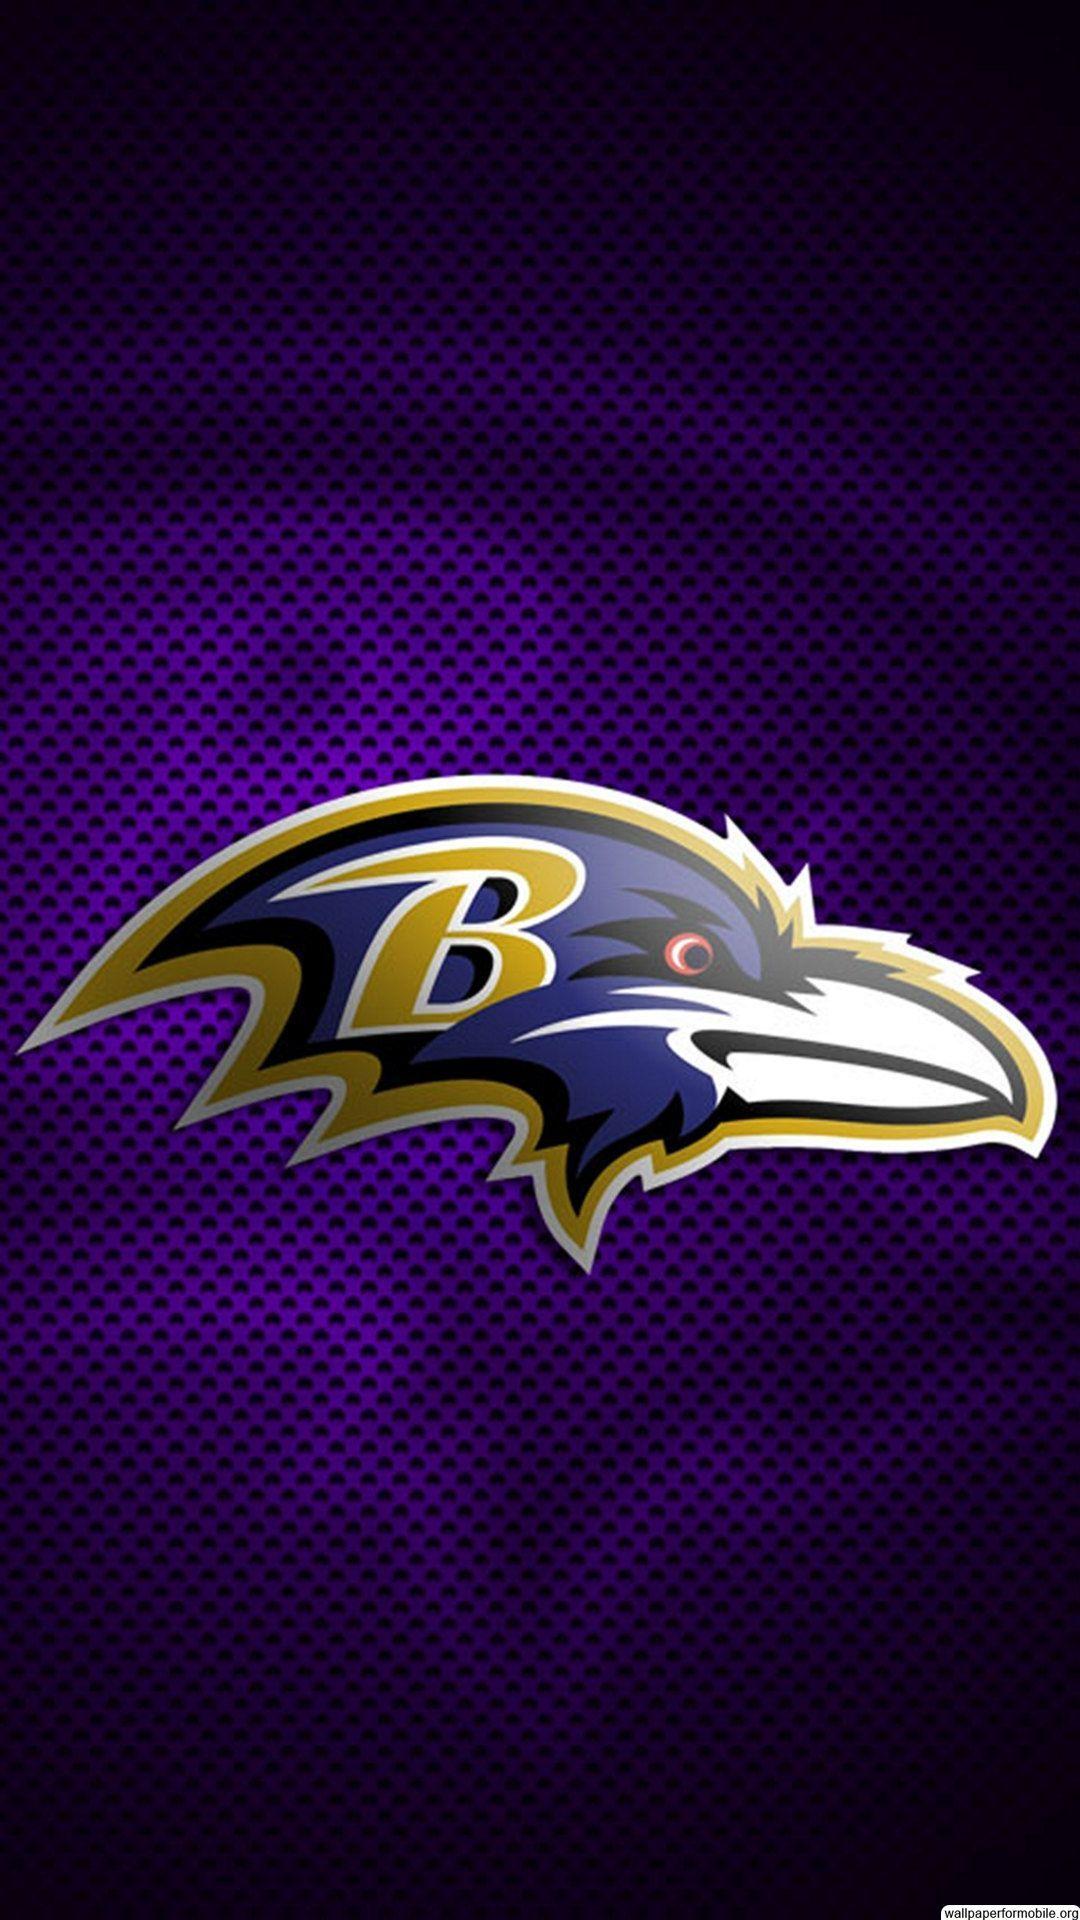 NFL Ravens Logo - Pin by Blackbeauty426 on Baltimore Ravens | Baltimore Ravens ...